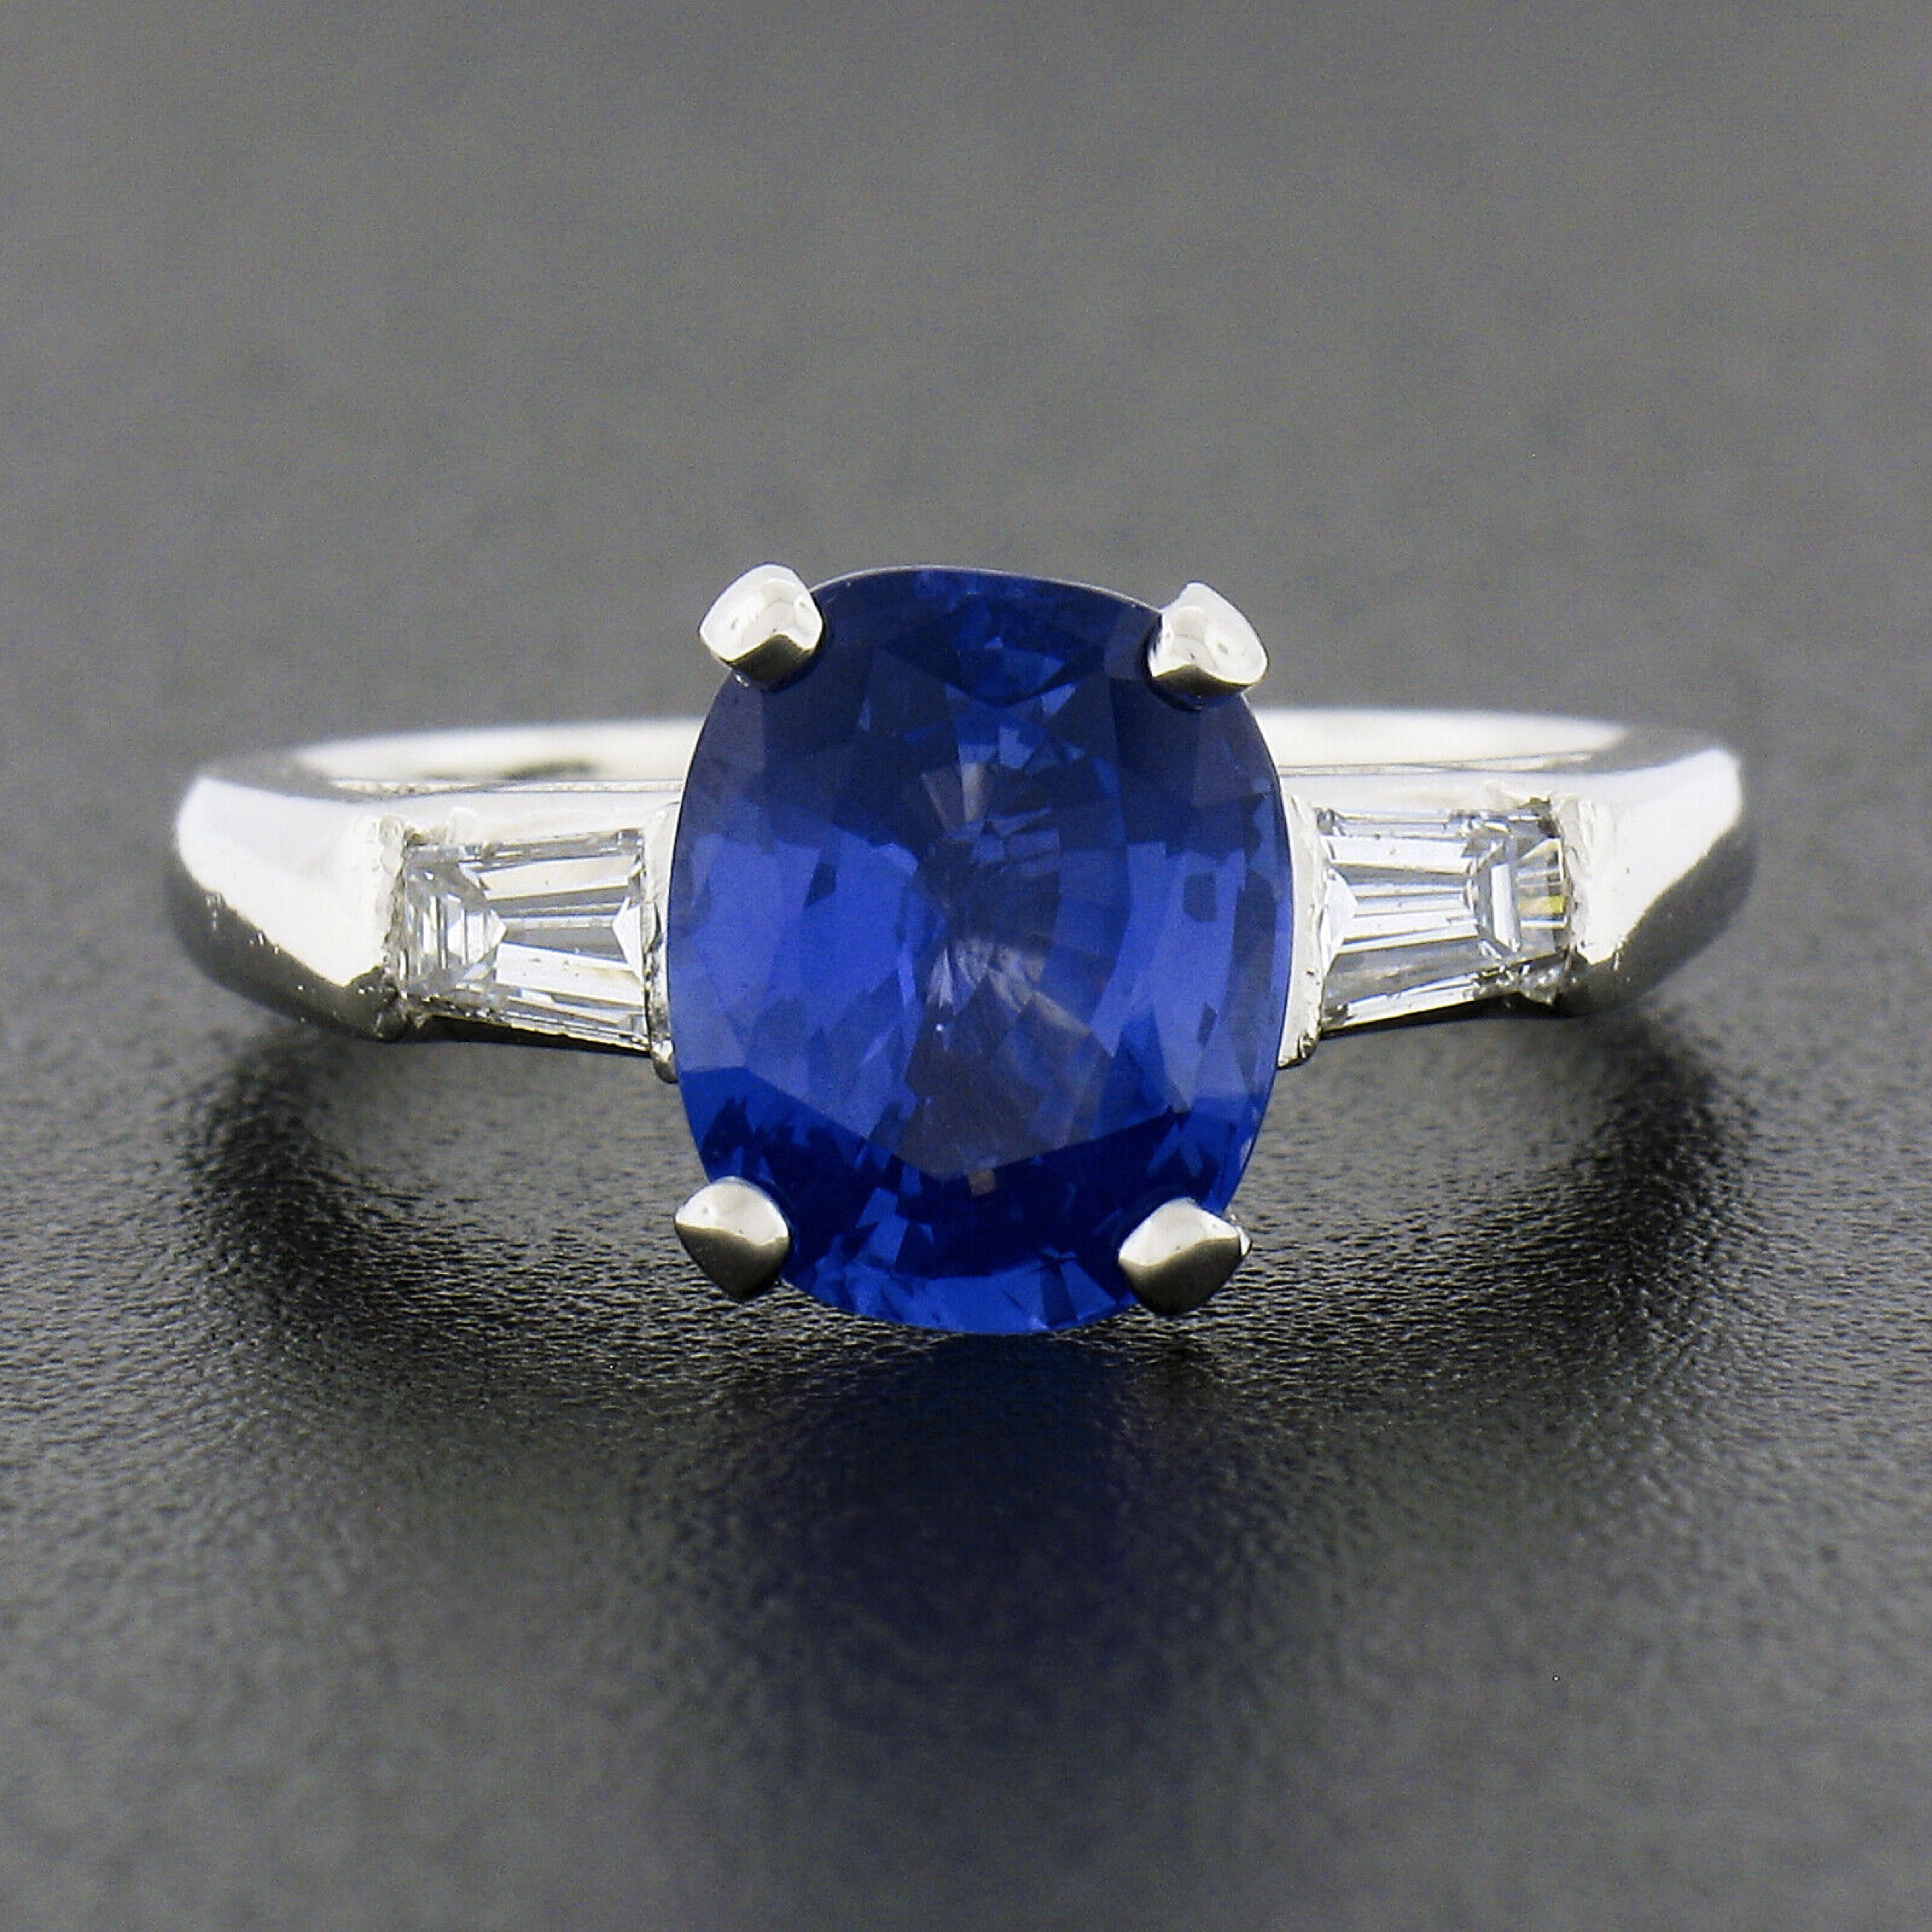 Sie sehen einen wirklich atemberaubenden Verlobungsring mit Saphir und Diamant, der aus massivem Platin gefertigt ist. Dieser Vintage-Ring zeigt einen wunderschönen, GIA-zertifizierten Saphir-Solitär im Kissenschliff, der in der Mitte des Korbes in